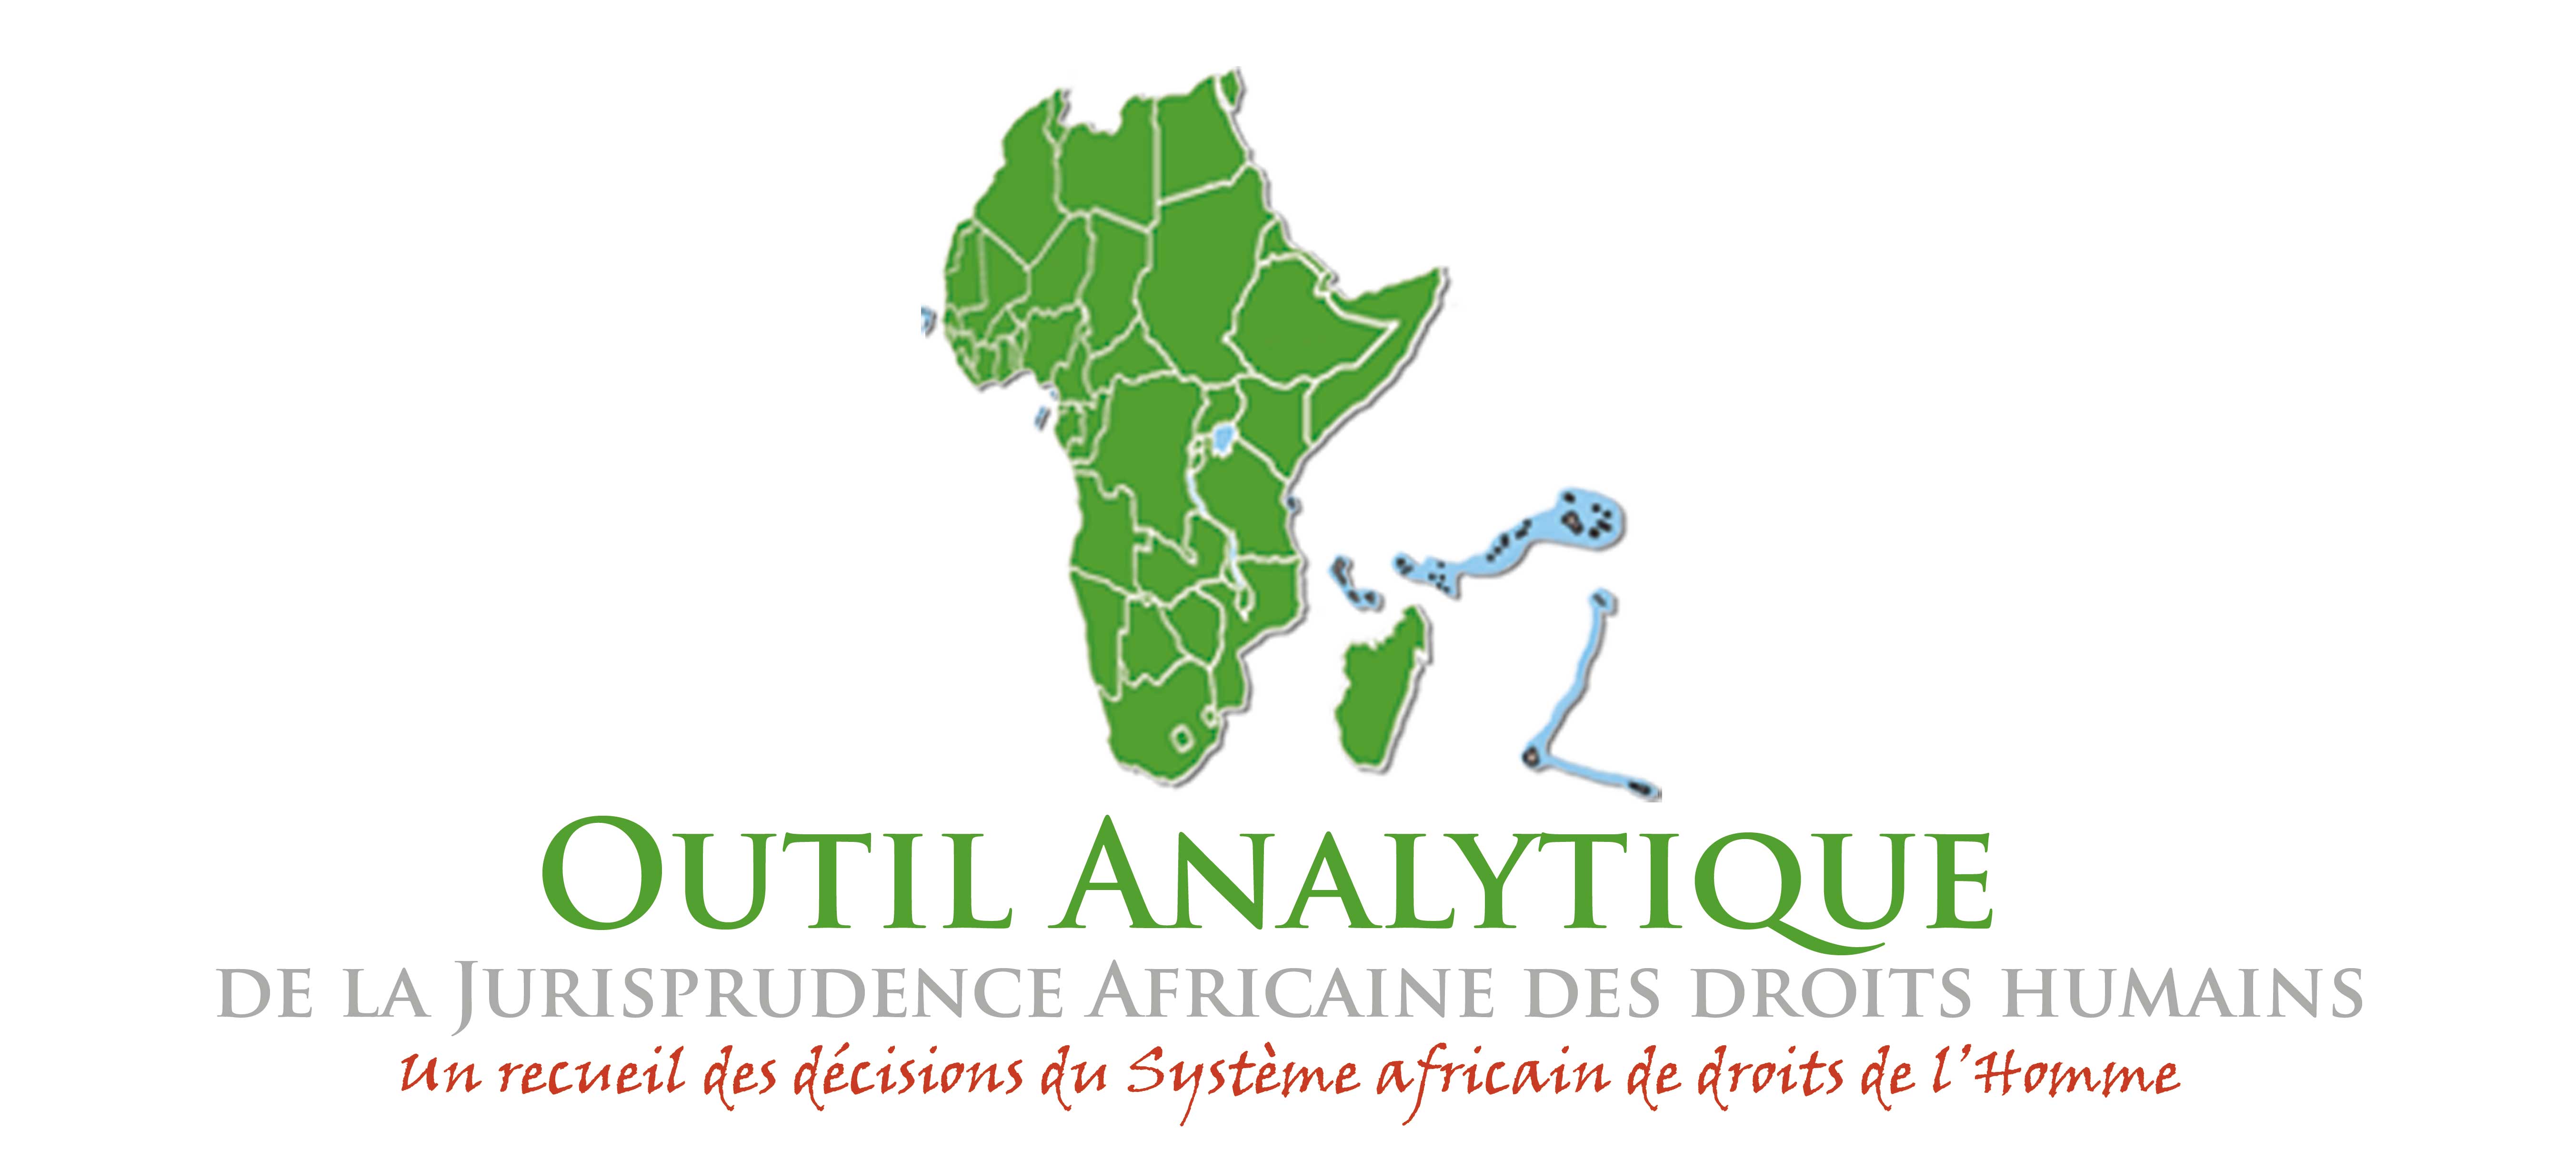 L’Outil Analytique de la Jurisprudence Africaine des Droits Humains accueille son 10.000è visiteur